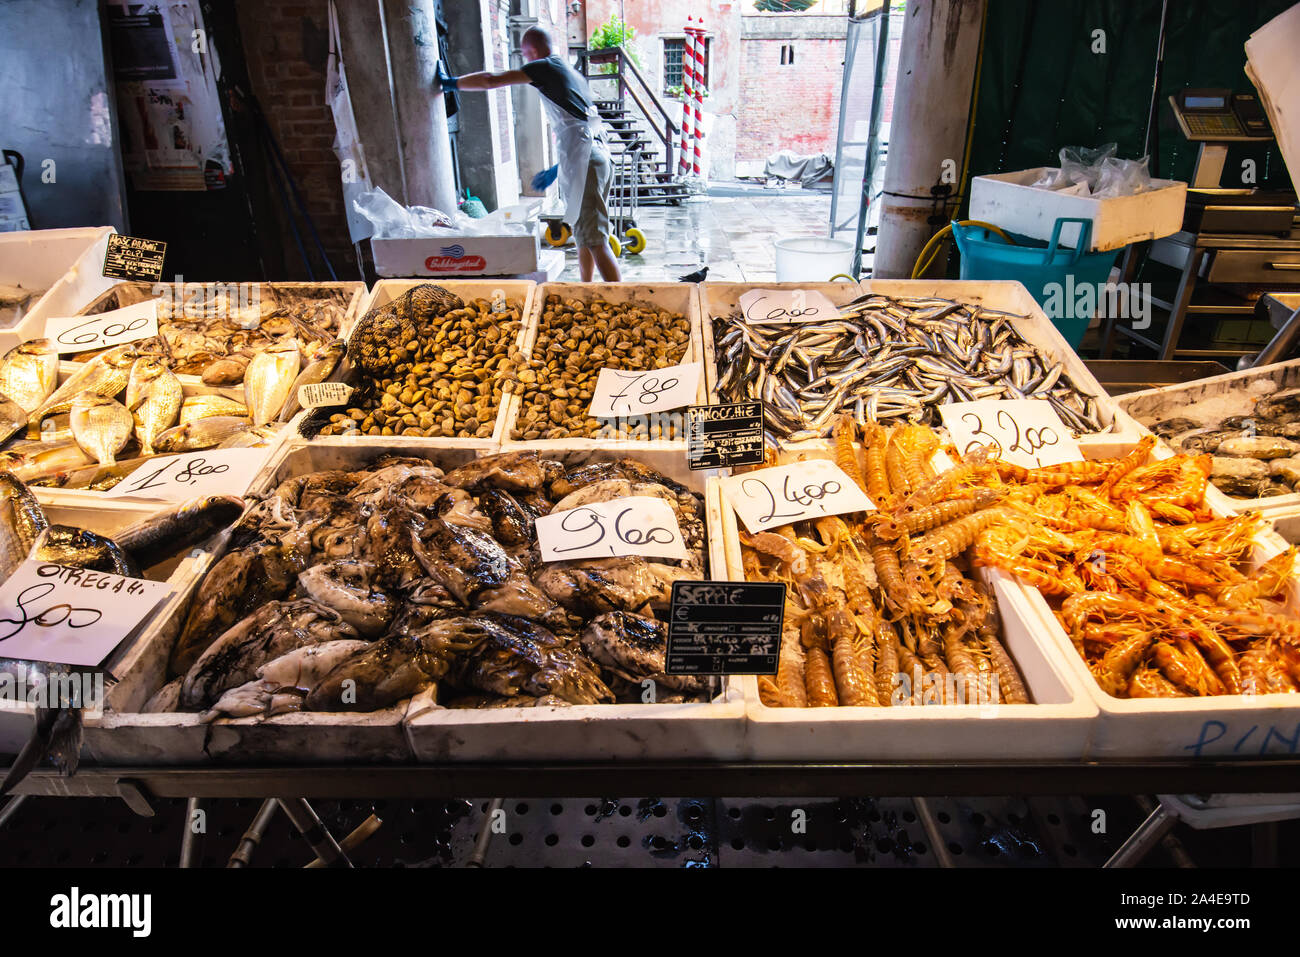 Venezia, Italia - Agosto 8, 2014: piatti a base di frutti di mare freschi sul mercato veneziano con il listino prezzi Foto Stock